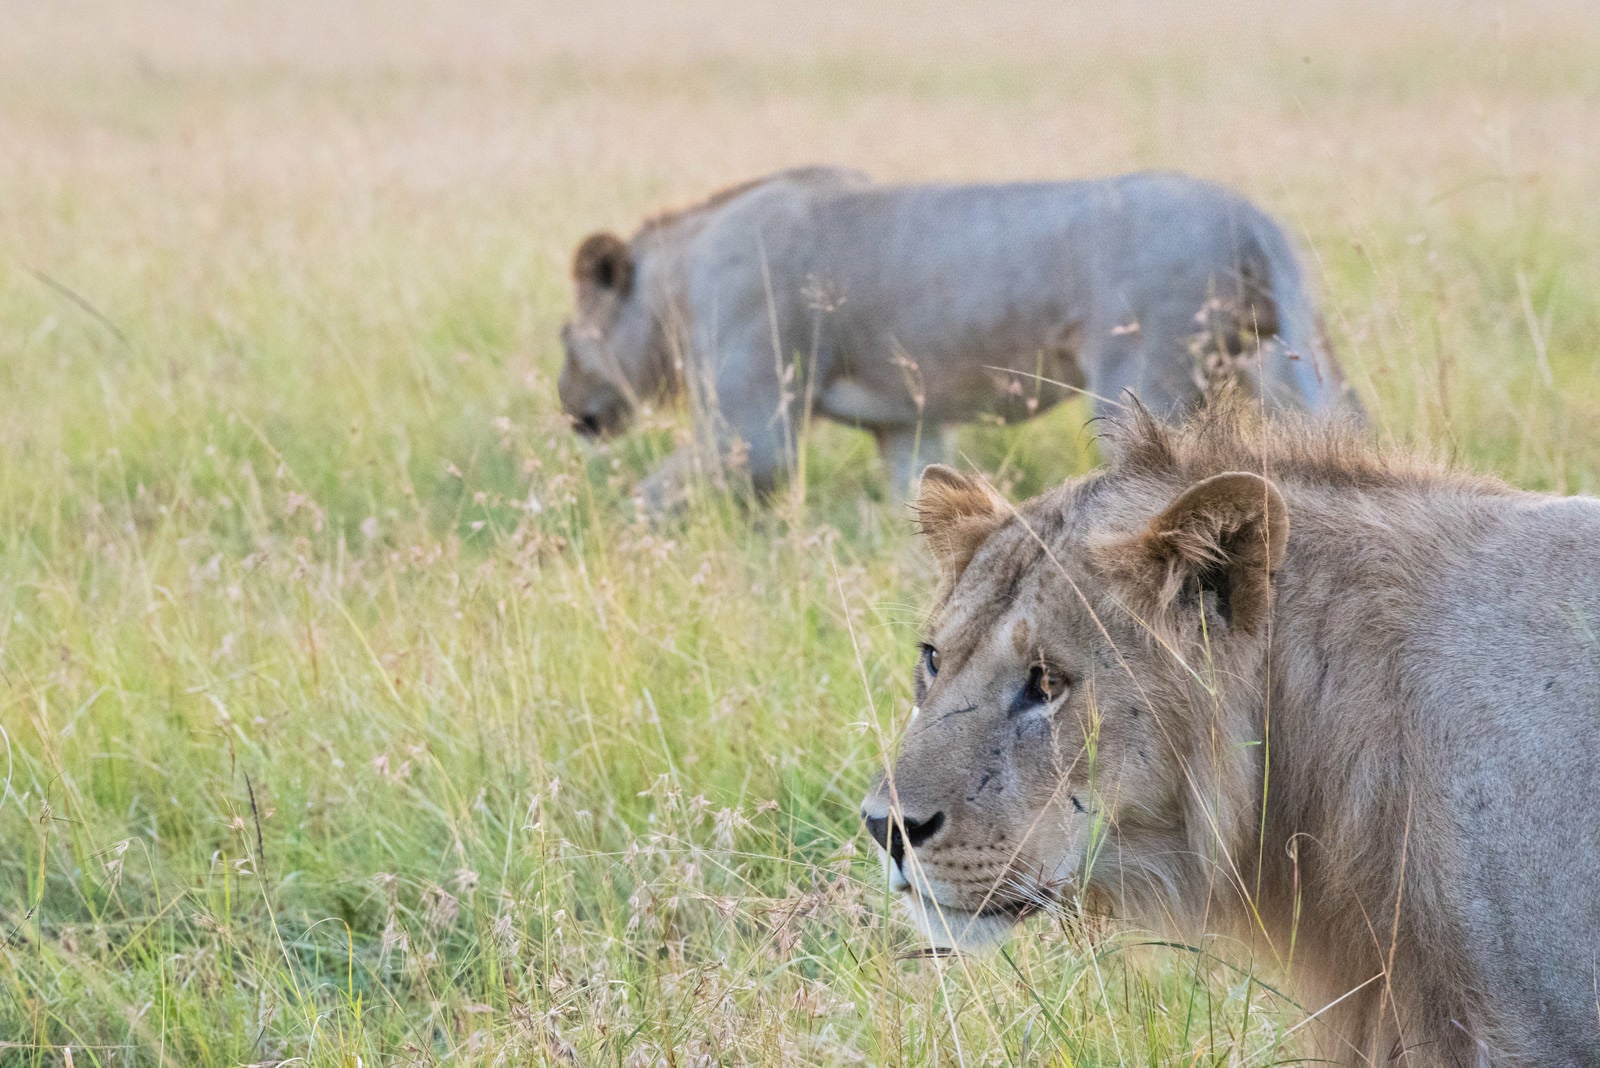 「獲物を狙うライオン」の写真